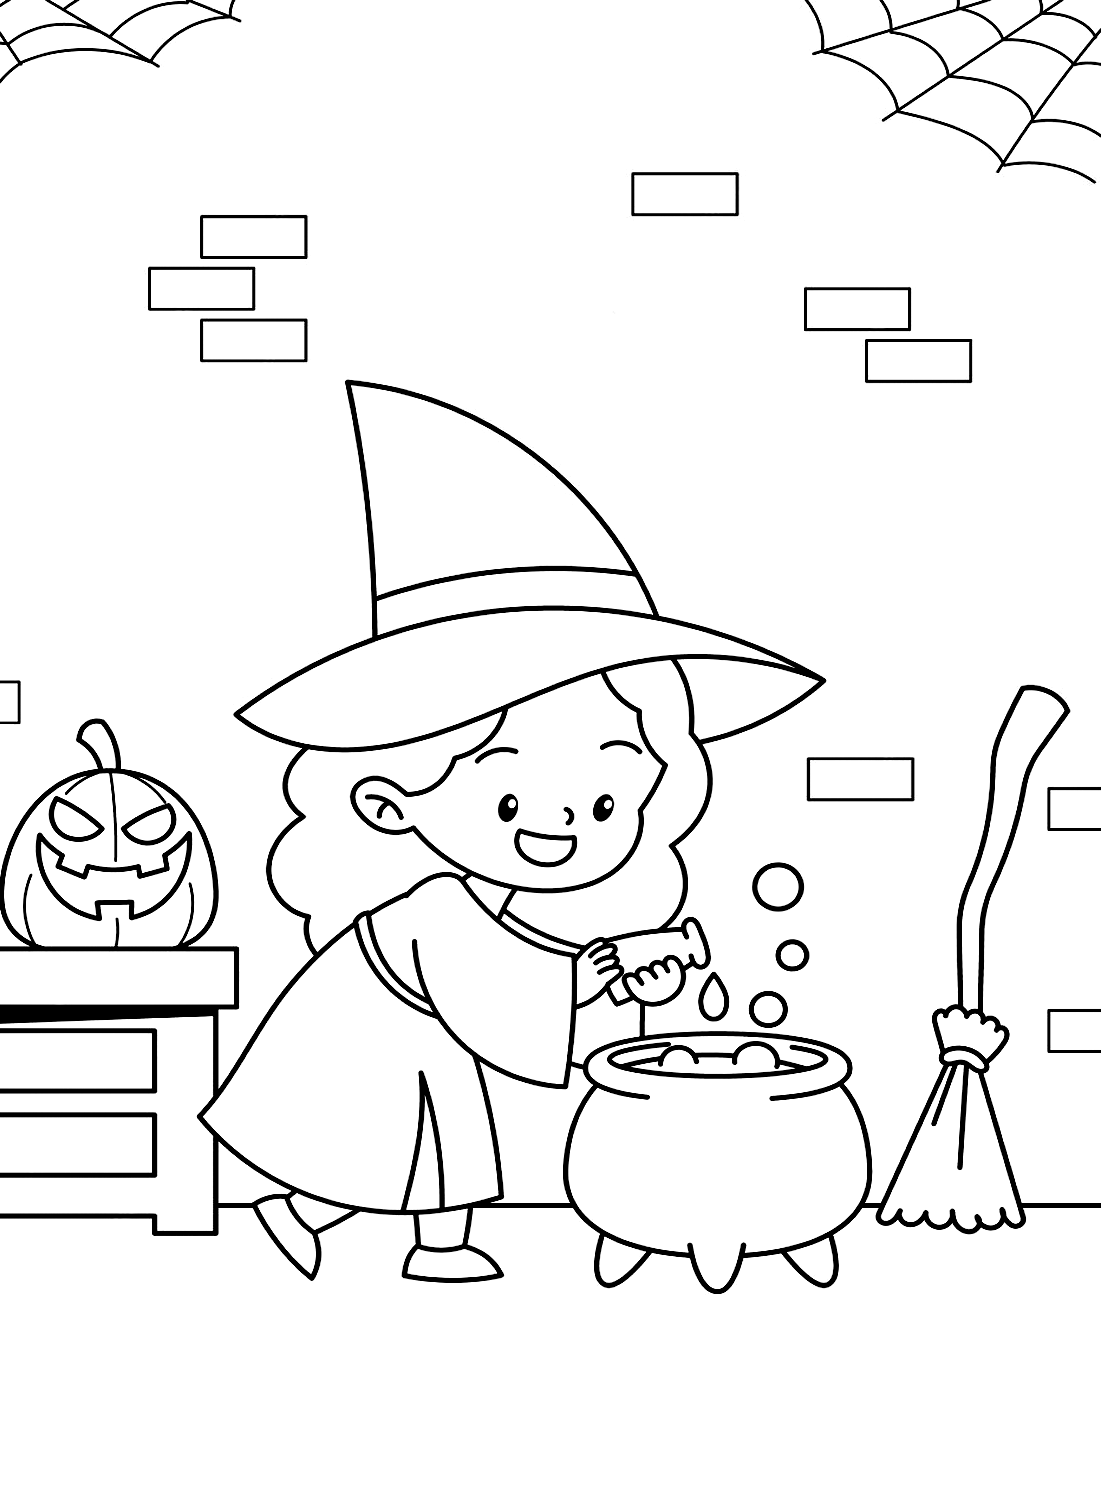 Una pequeña bruja está cocinando para imprimir desde Cute Halloween